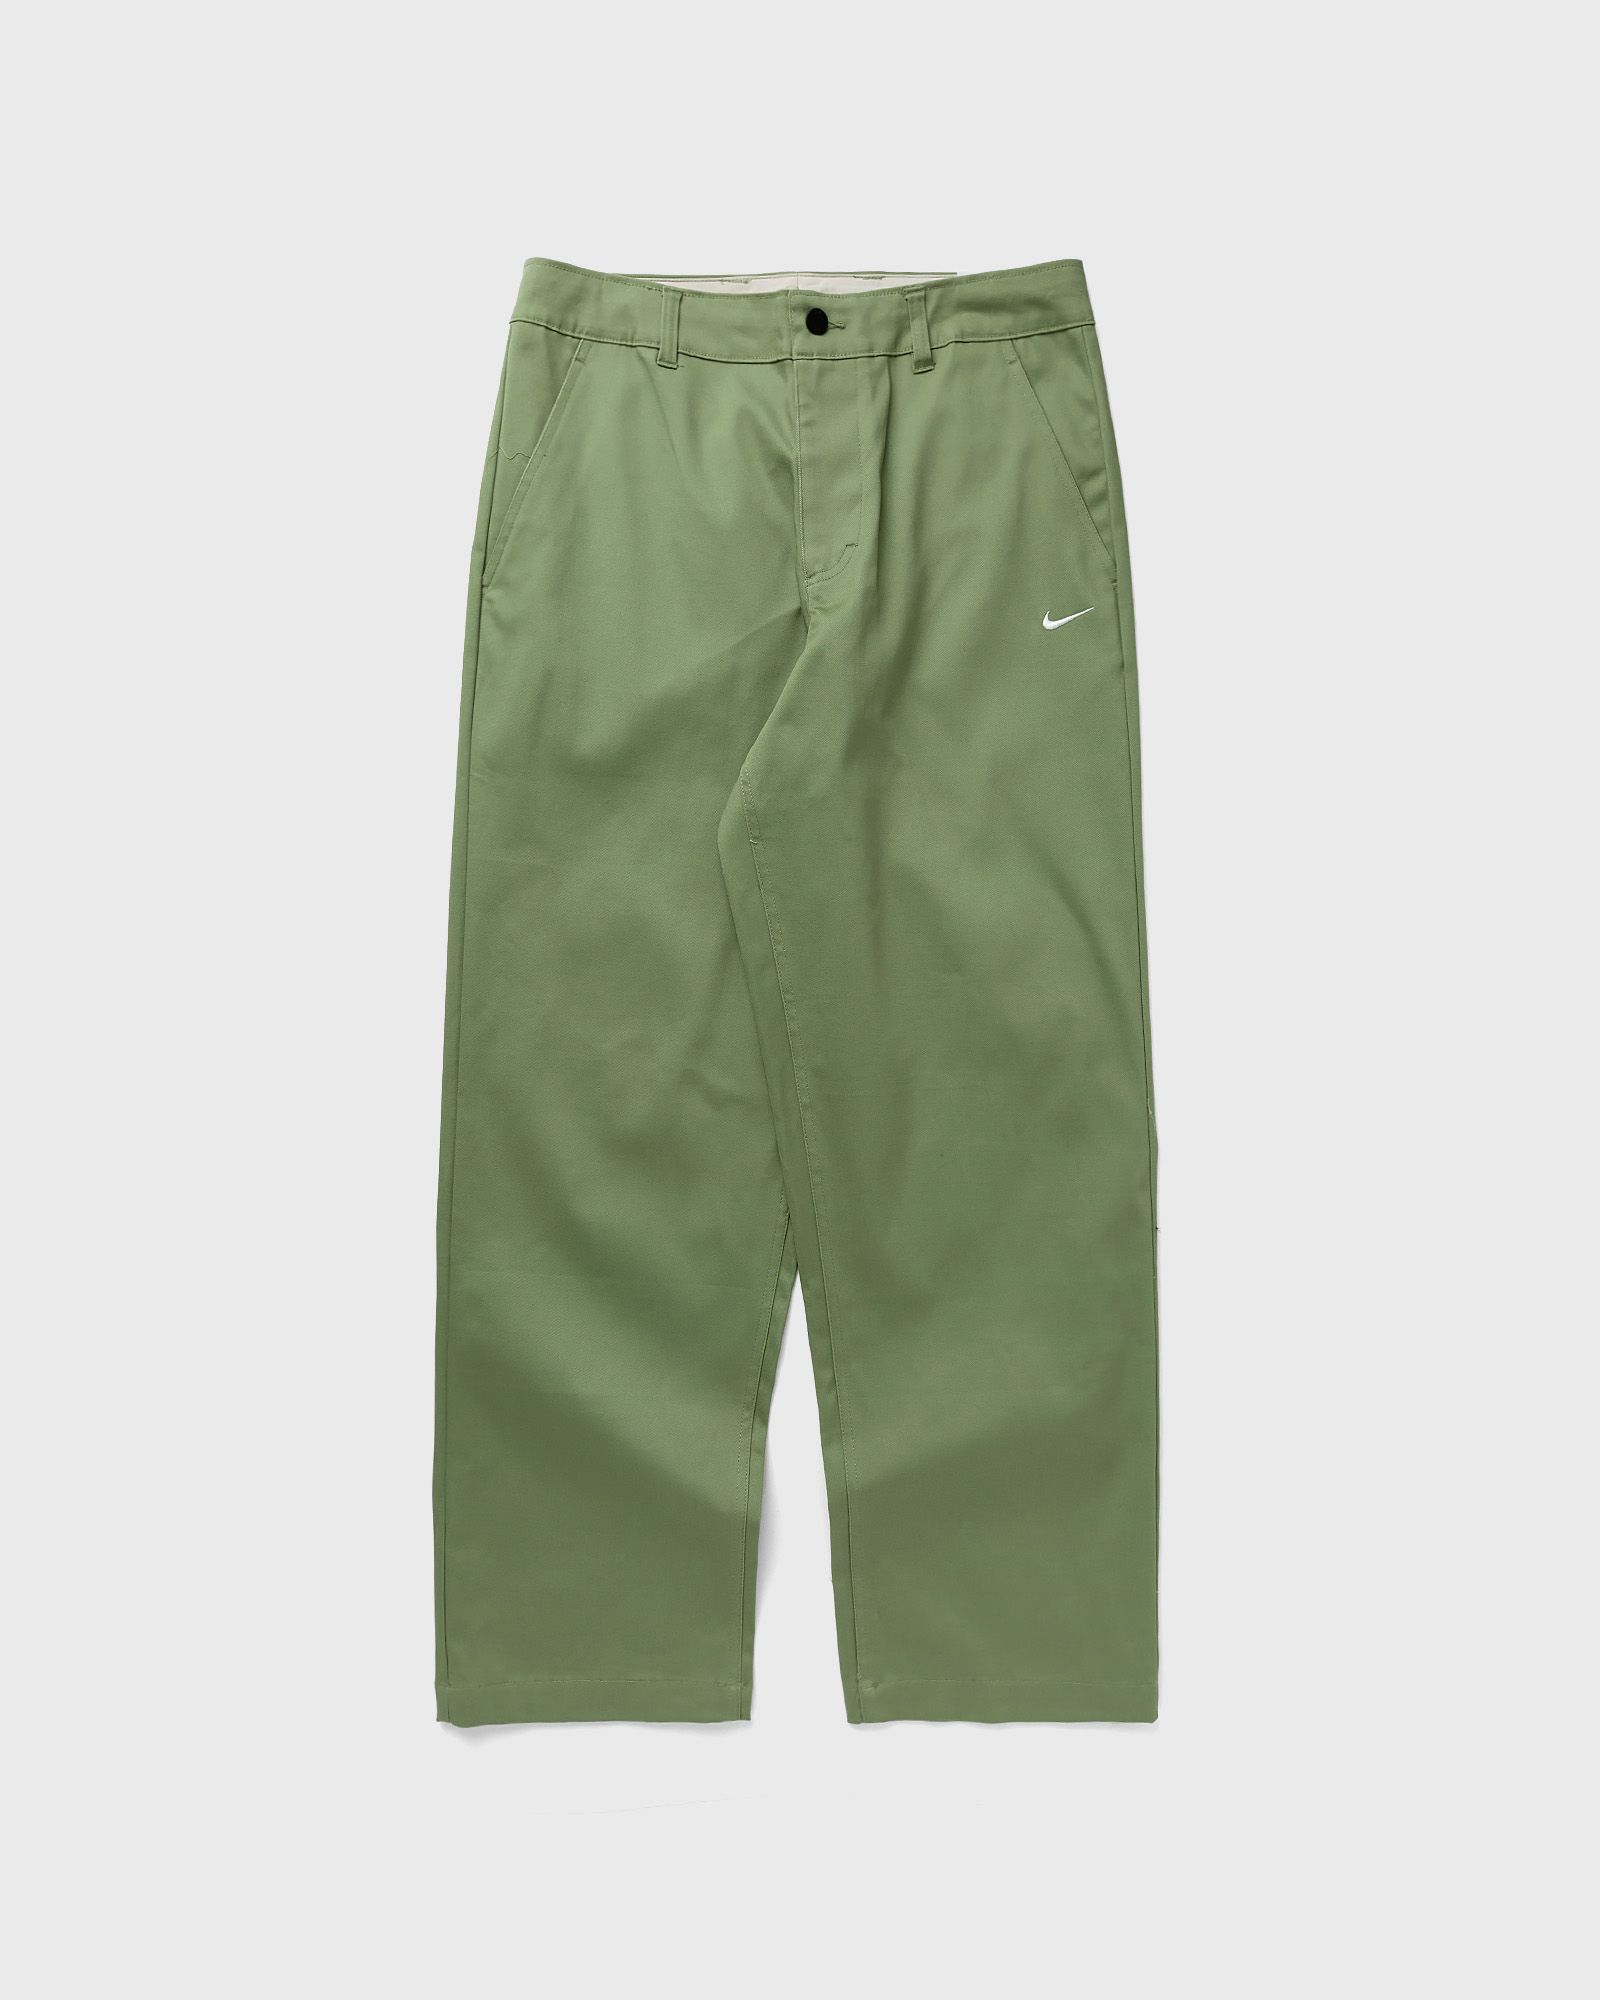 Nike - el chino pants men casual pants green in größe:l